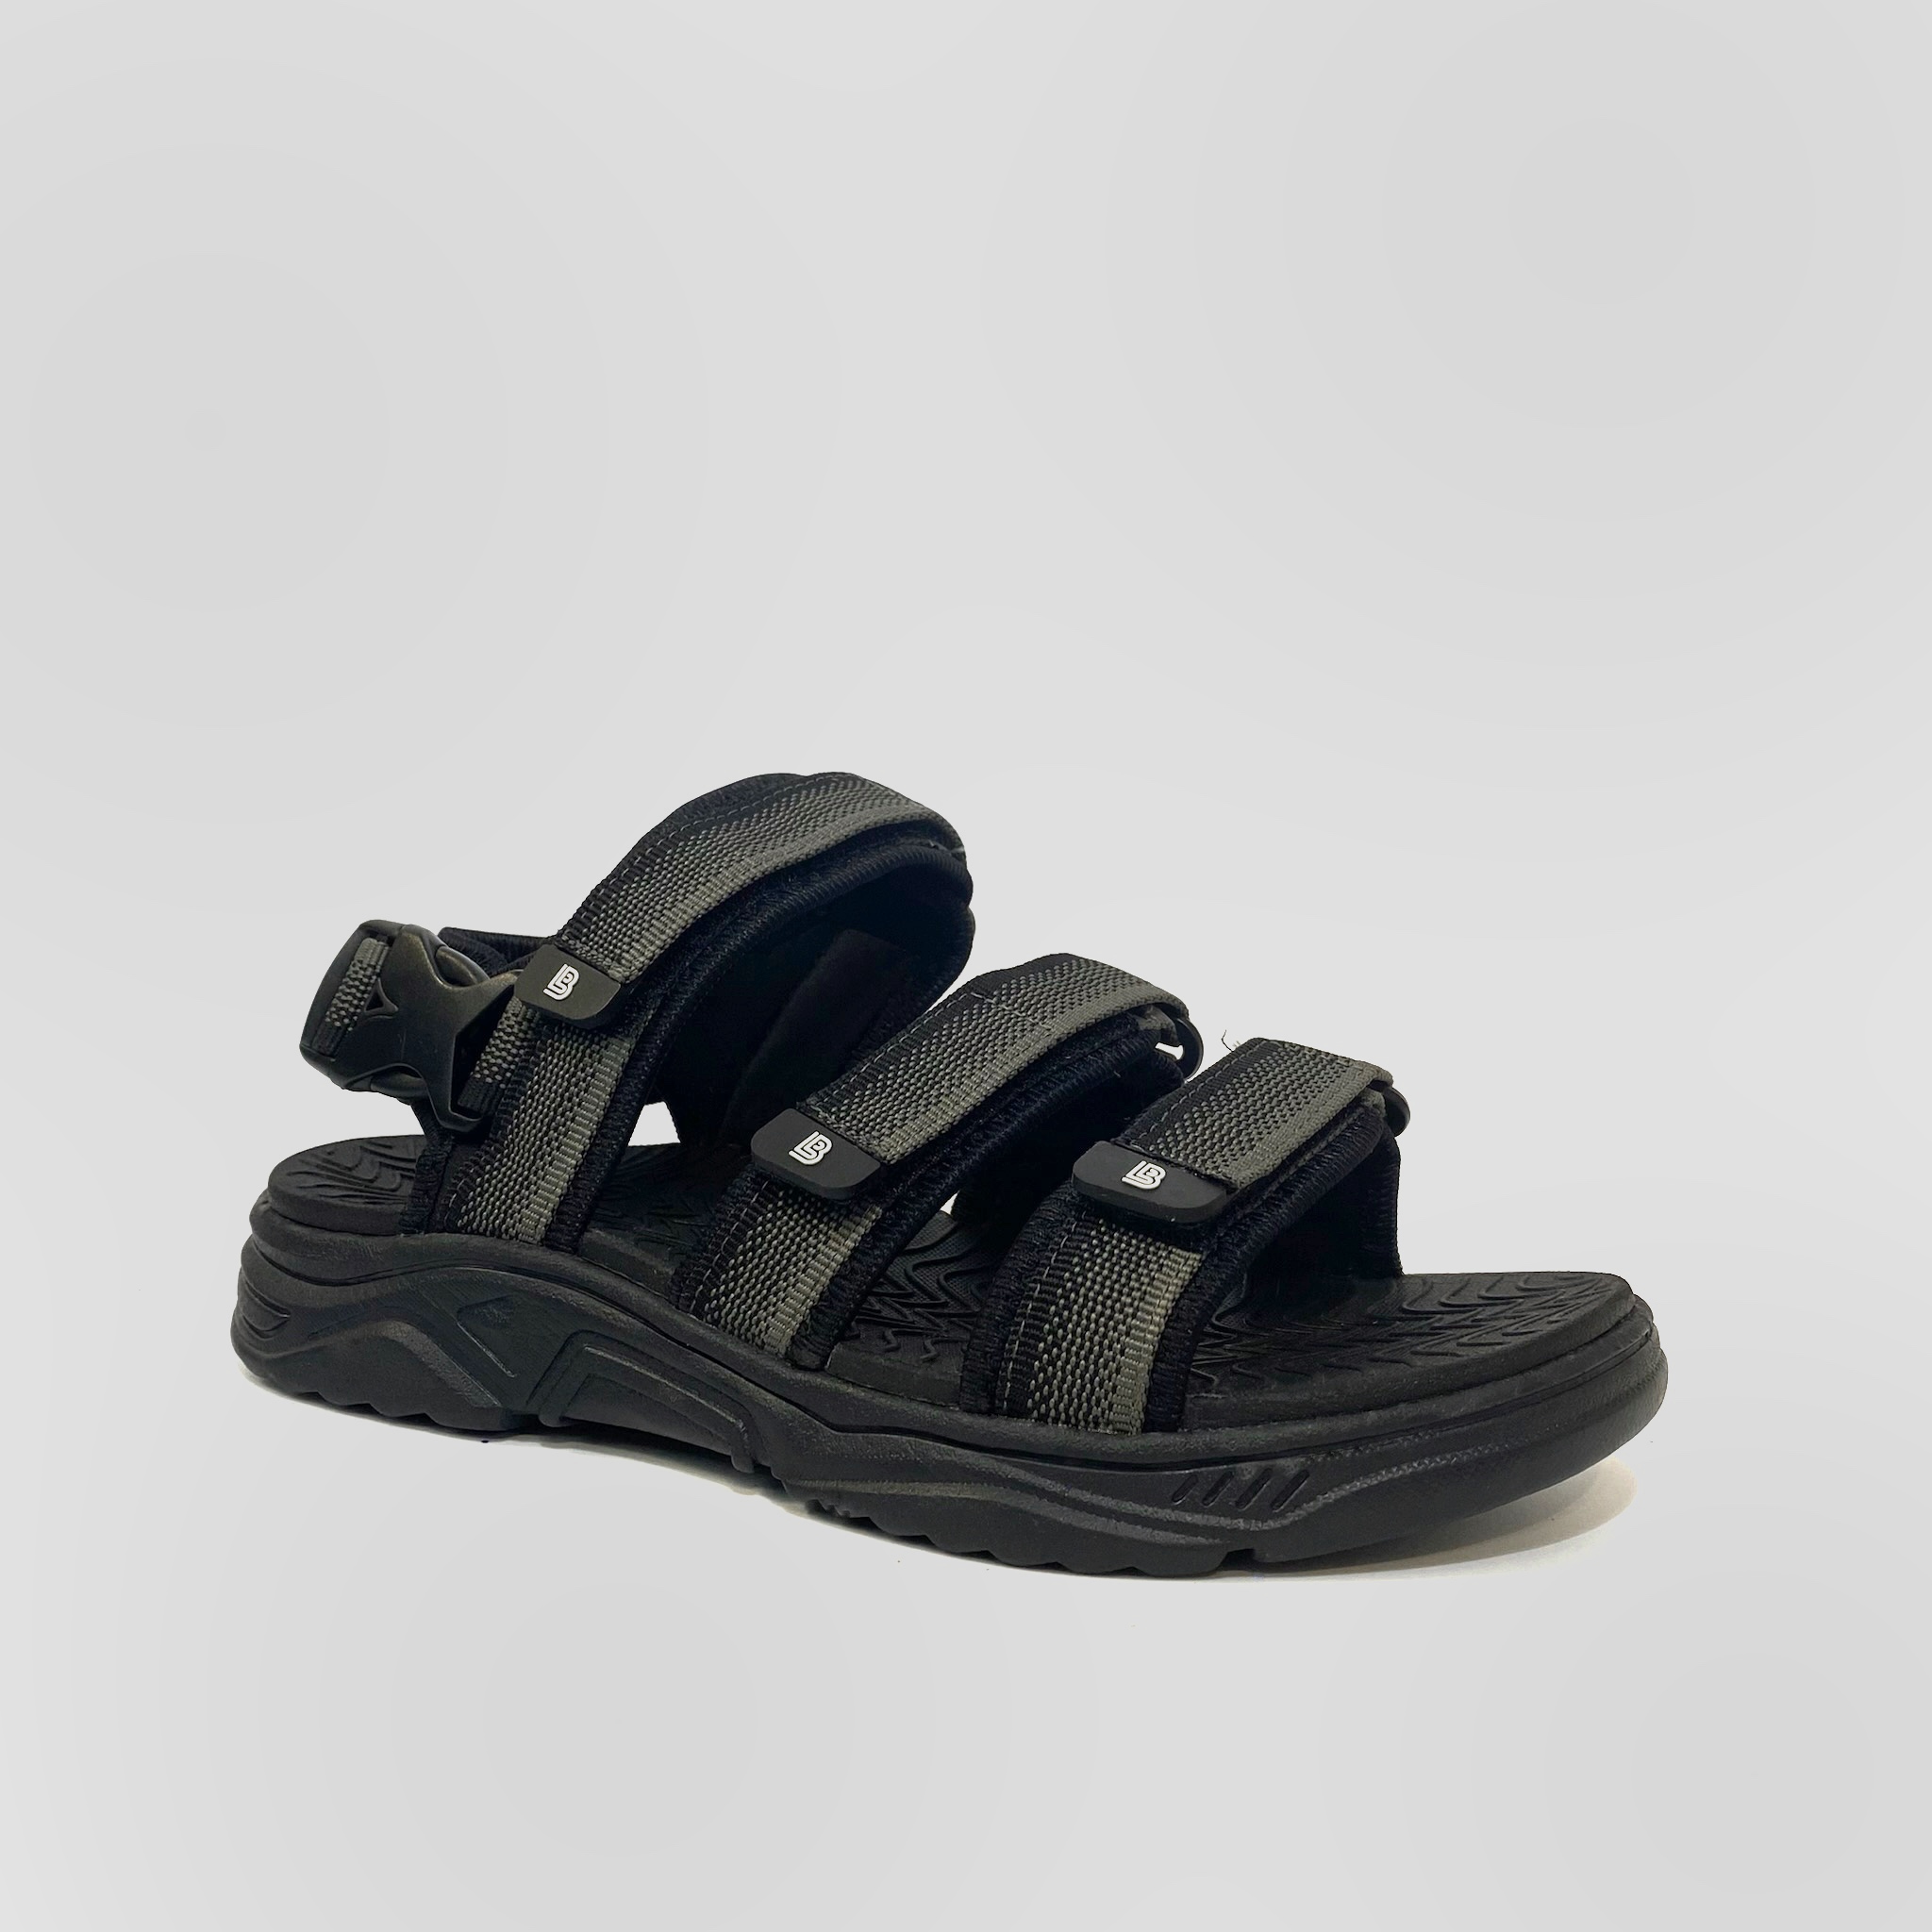 Hình ảnh Giày Sandal Nam The Bily 3 Quai Ngang - Màu Xám Thổ Cẩm BL04